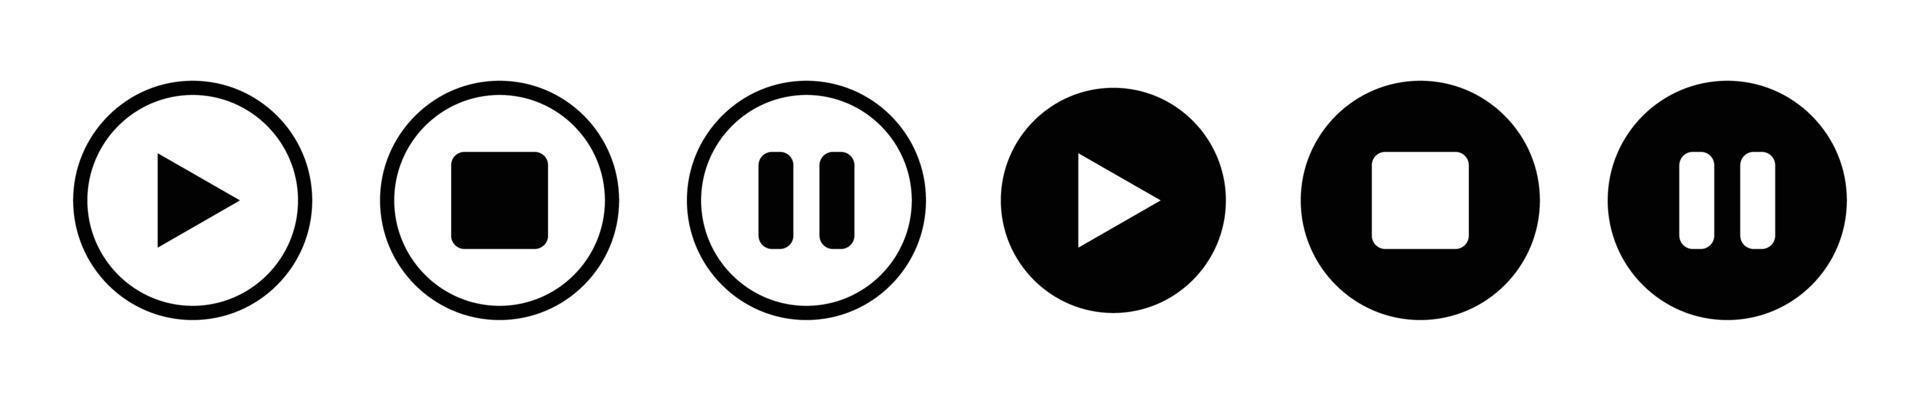 pulsanti di riproduzione e pausa - disegno vettoriale icona illustrazione. lettore audio video. simbolo dell'icona set pulsante giocatore